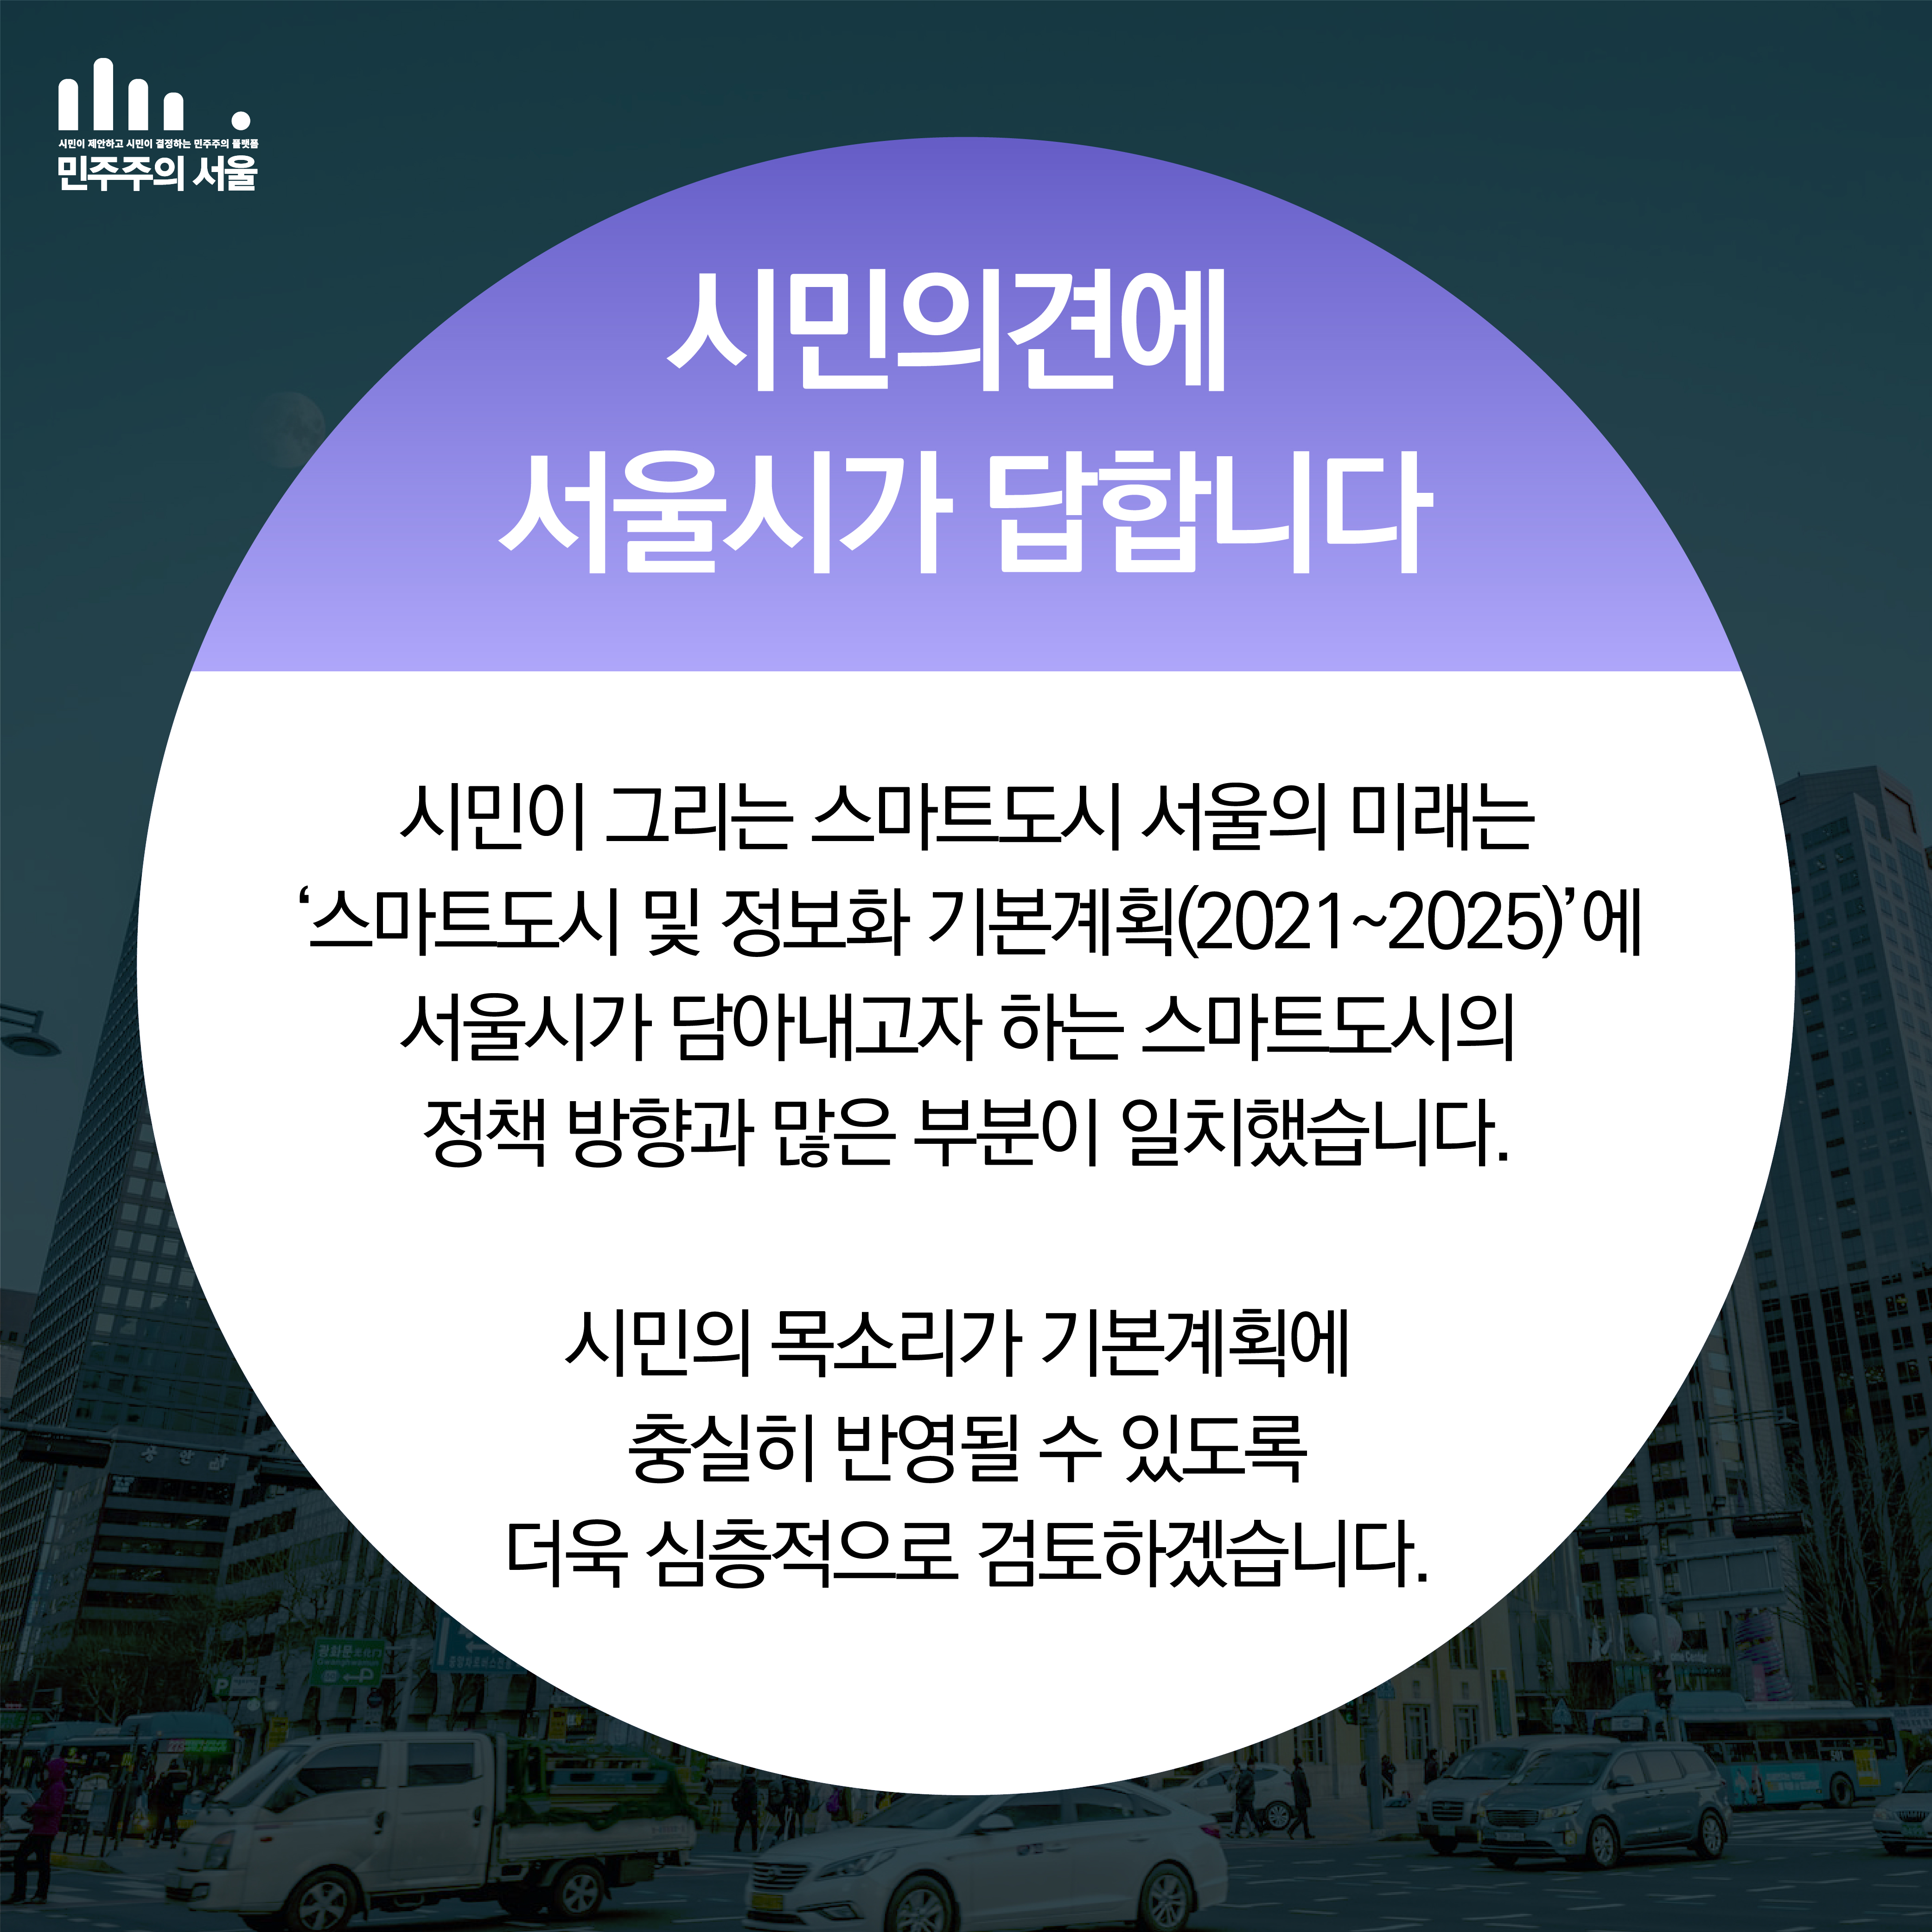 시민의견에 서울시가 답합니다. 시민이 그리는 스마트도시 서울의 미래는 ‘’스마트도시 및 정보화 기본계획(2021~2025)’에 서울시가 담아내고자 하는 스마트도시의 정책방향과 많은 부분이 일치했습니다. 시민의 목소리가 기본계획에 충실히 반영될 수 있도록 더욱 심층적으로 검토하겠습니다.